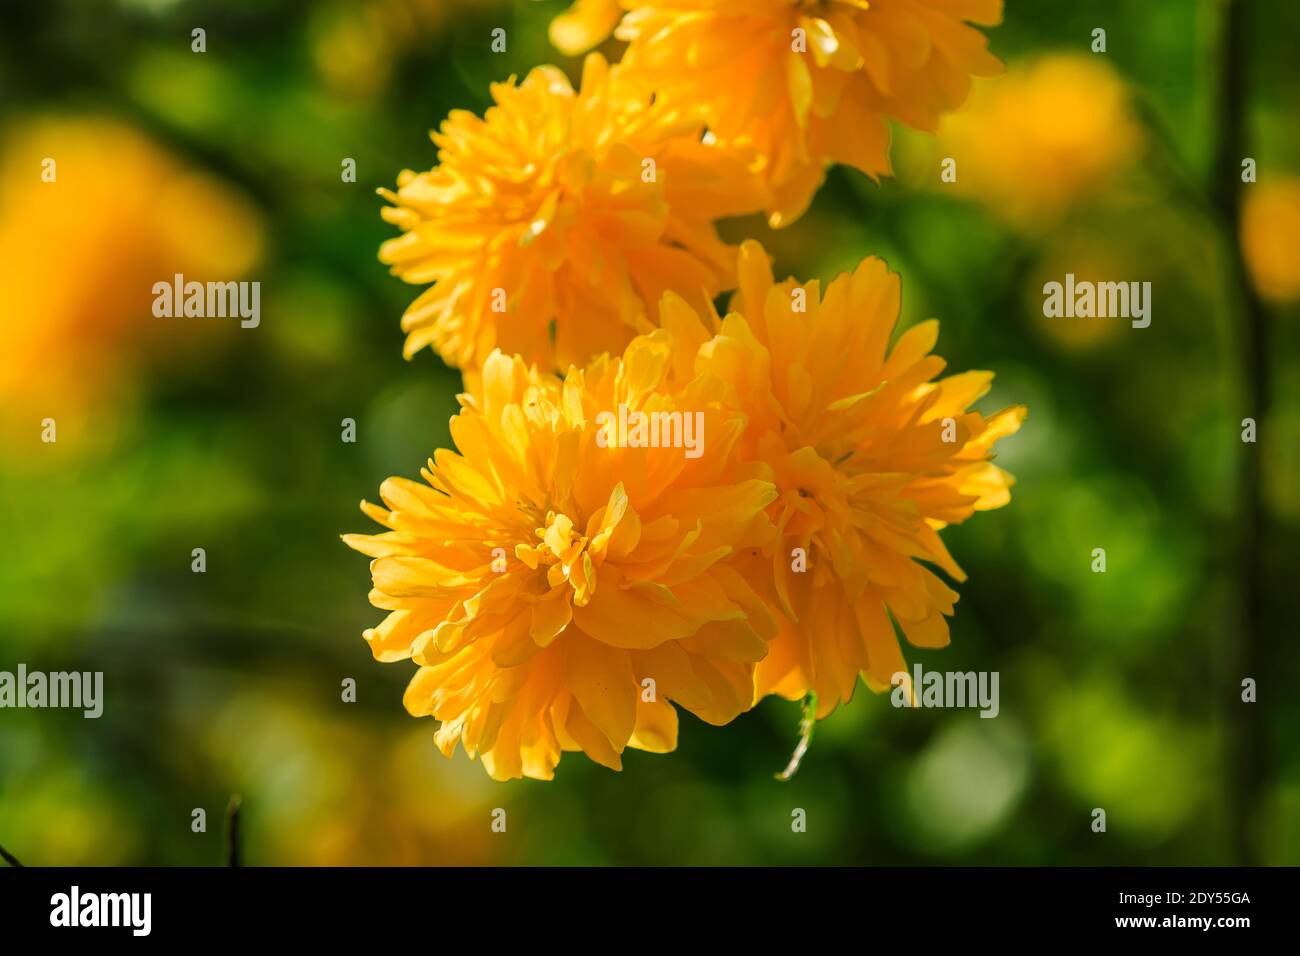 Ranunculus japonais au soleil. Photo détaillée de fleurs japonaises avec fleurs jaunes ouvertes dans un jardin sauvage. Plusieurs fleurs sur un arbuste avec l vert Banque D'Images